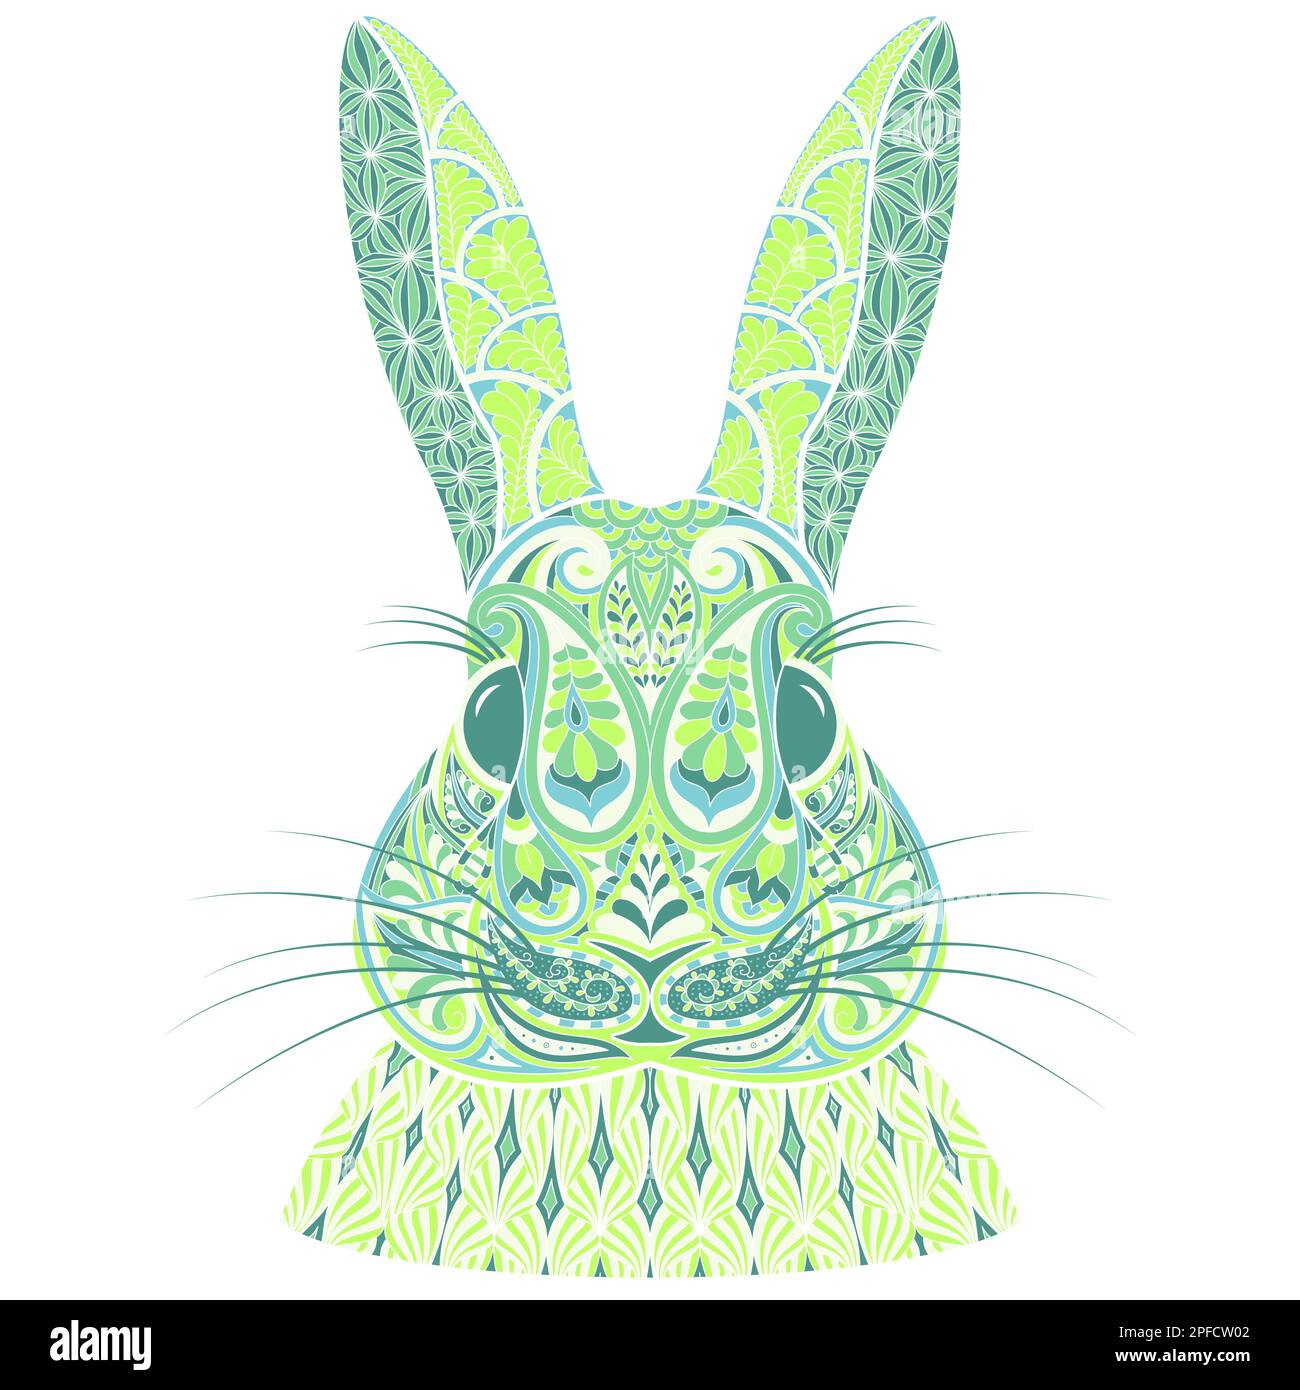 Testa di coniglio a motivi geometrici nei toni verdi con elementi Paisley ispirati allo Zentangle. Motivo coniglietto decorativo in stile etnico indiano. Henna, Mehndi, Illustrazione Vettoriale